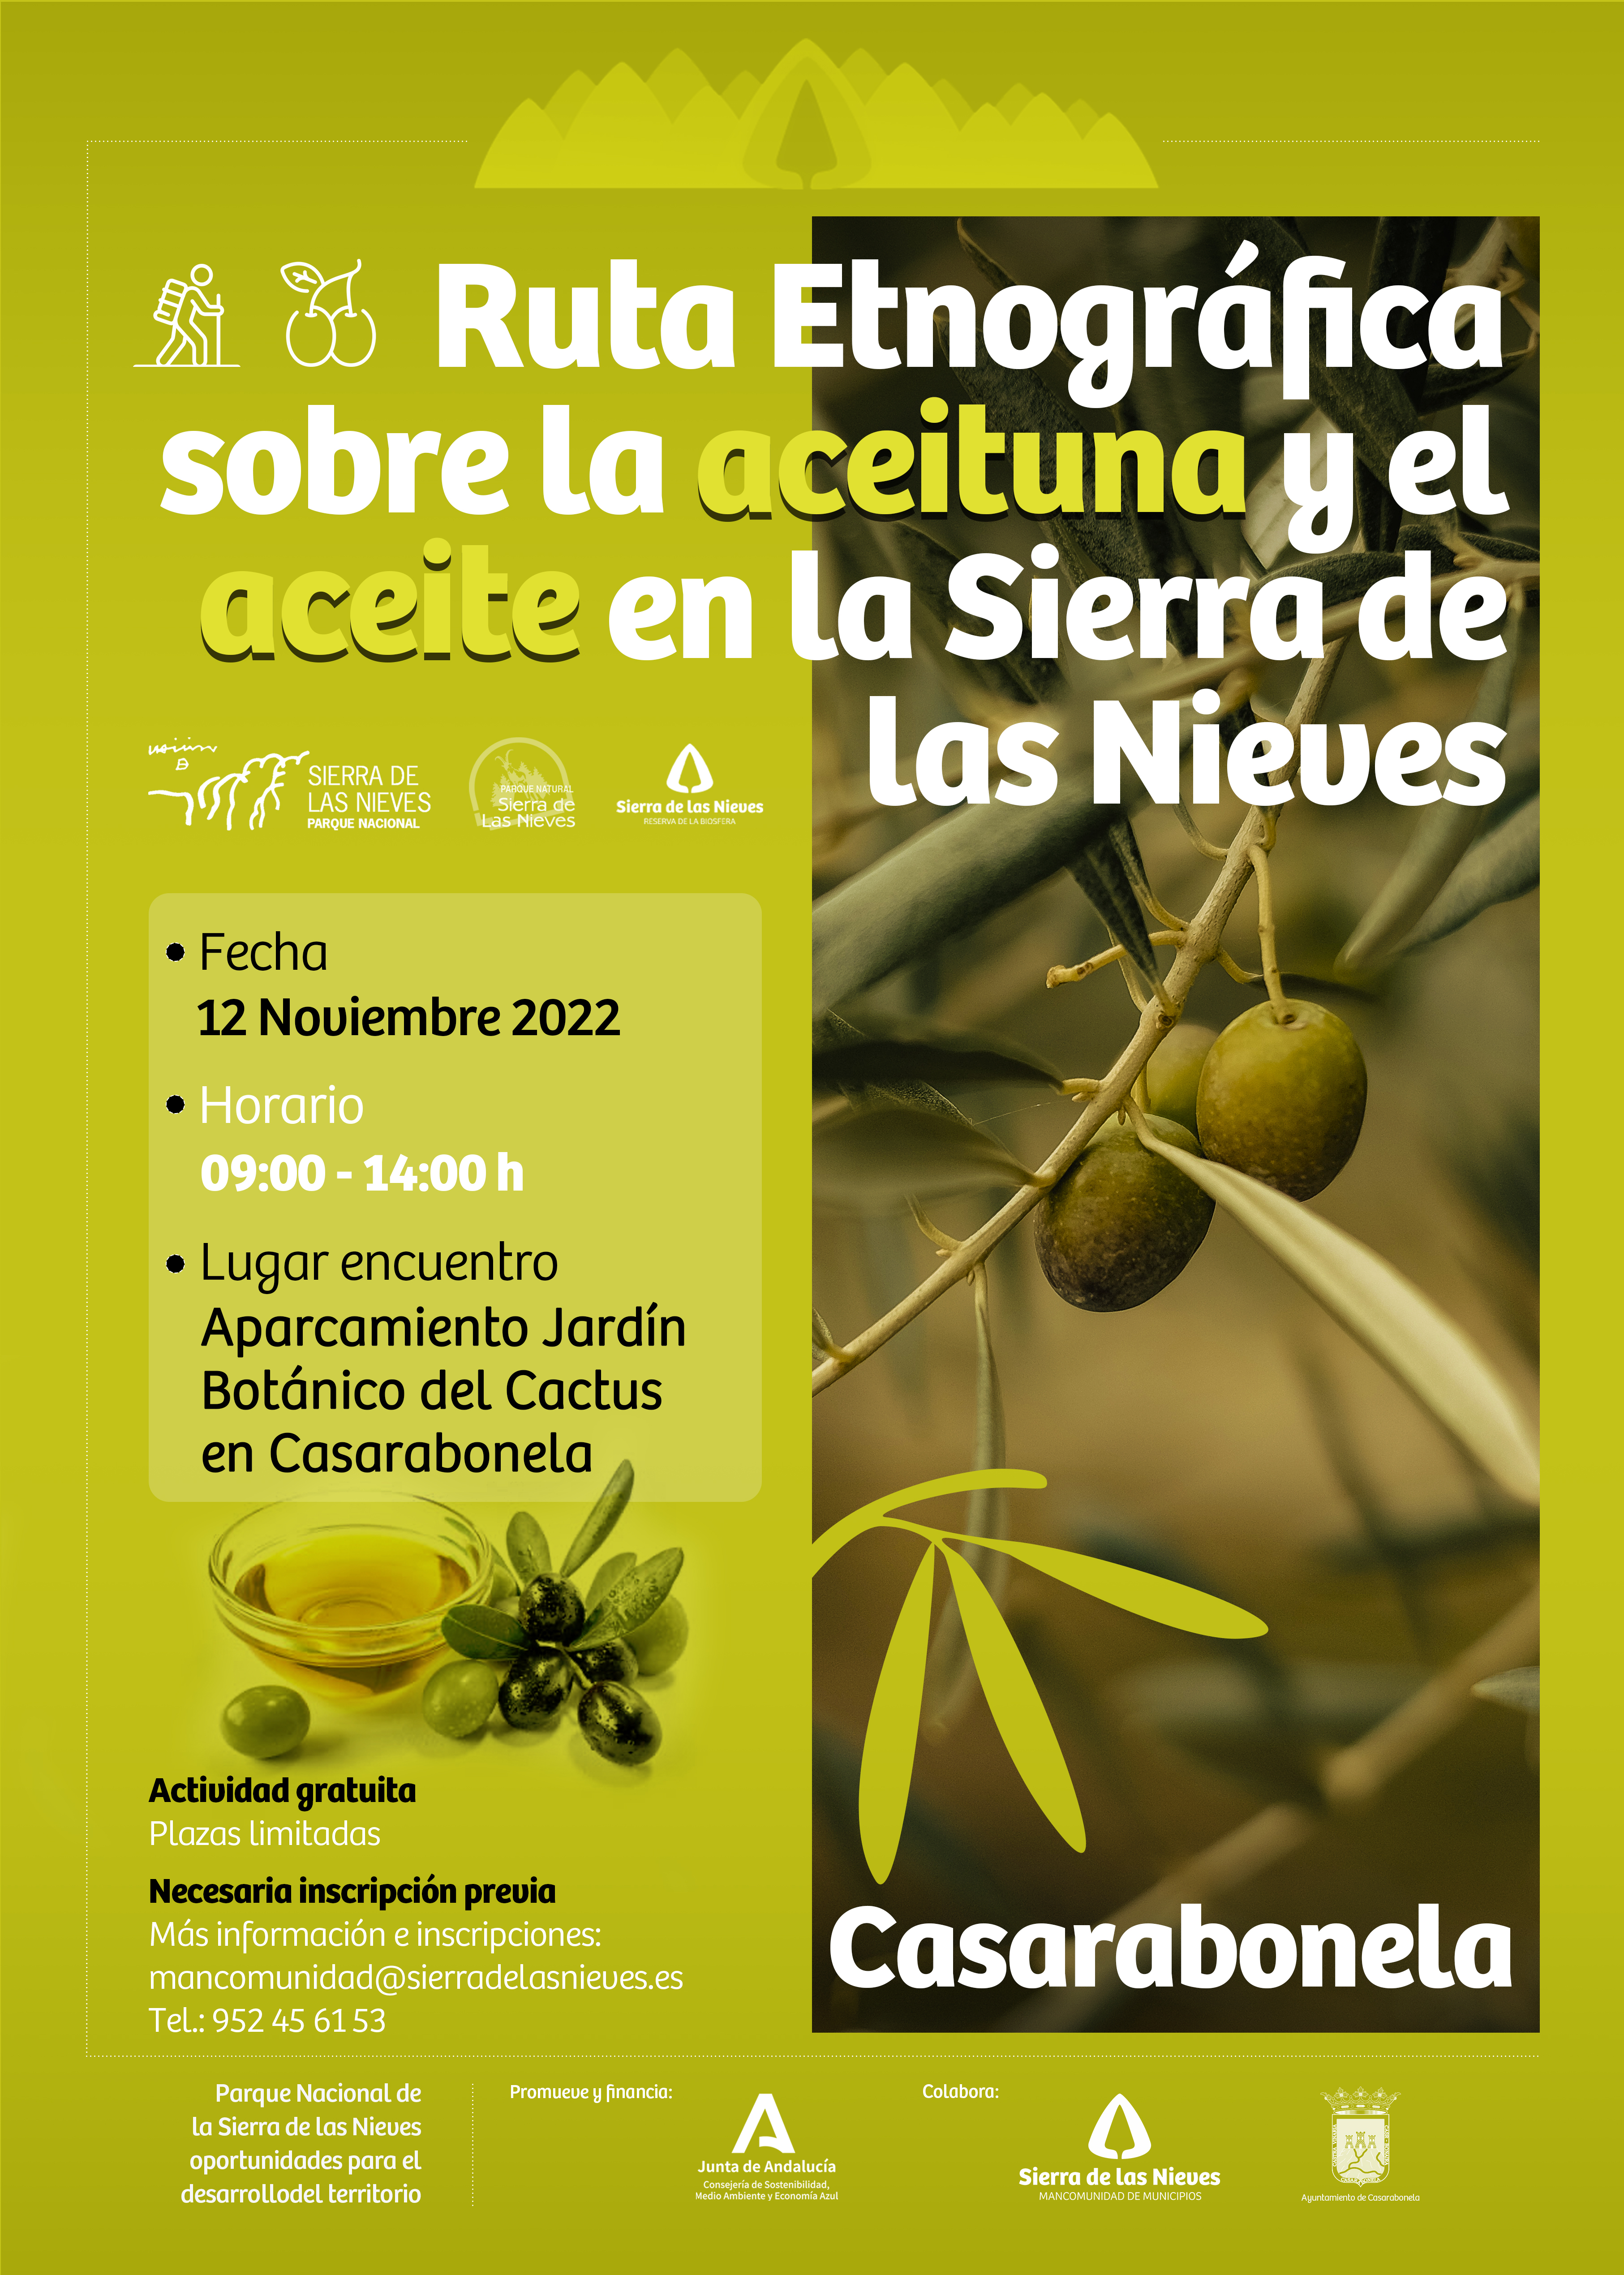 Ruta Etnográfica sobre la aceituna y el aceite en la Sierra de las Nieves - Fecha 12 de Noviembre 2022 - Lugar de encuentro: Aparcamiento Jardín Botánico del Cactus Casarabonela.